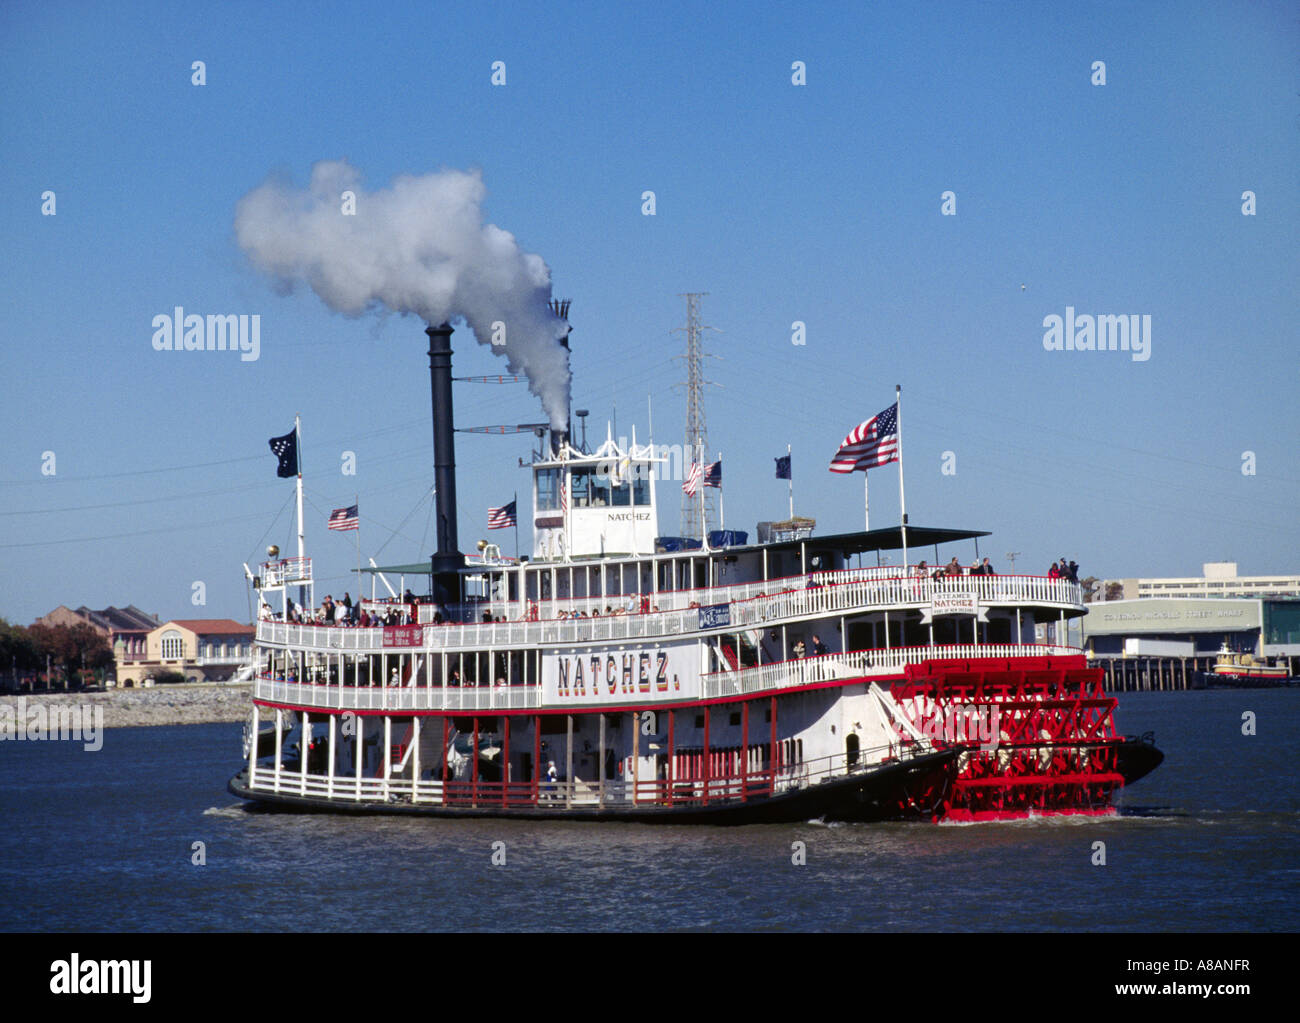 Le Natchez est un bateau à aubes qui prend tous les jours des croisières sur la rivière Mississippi, Louisiane Nouvelle-orléans Banque D'Images